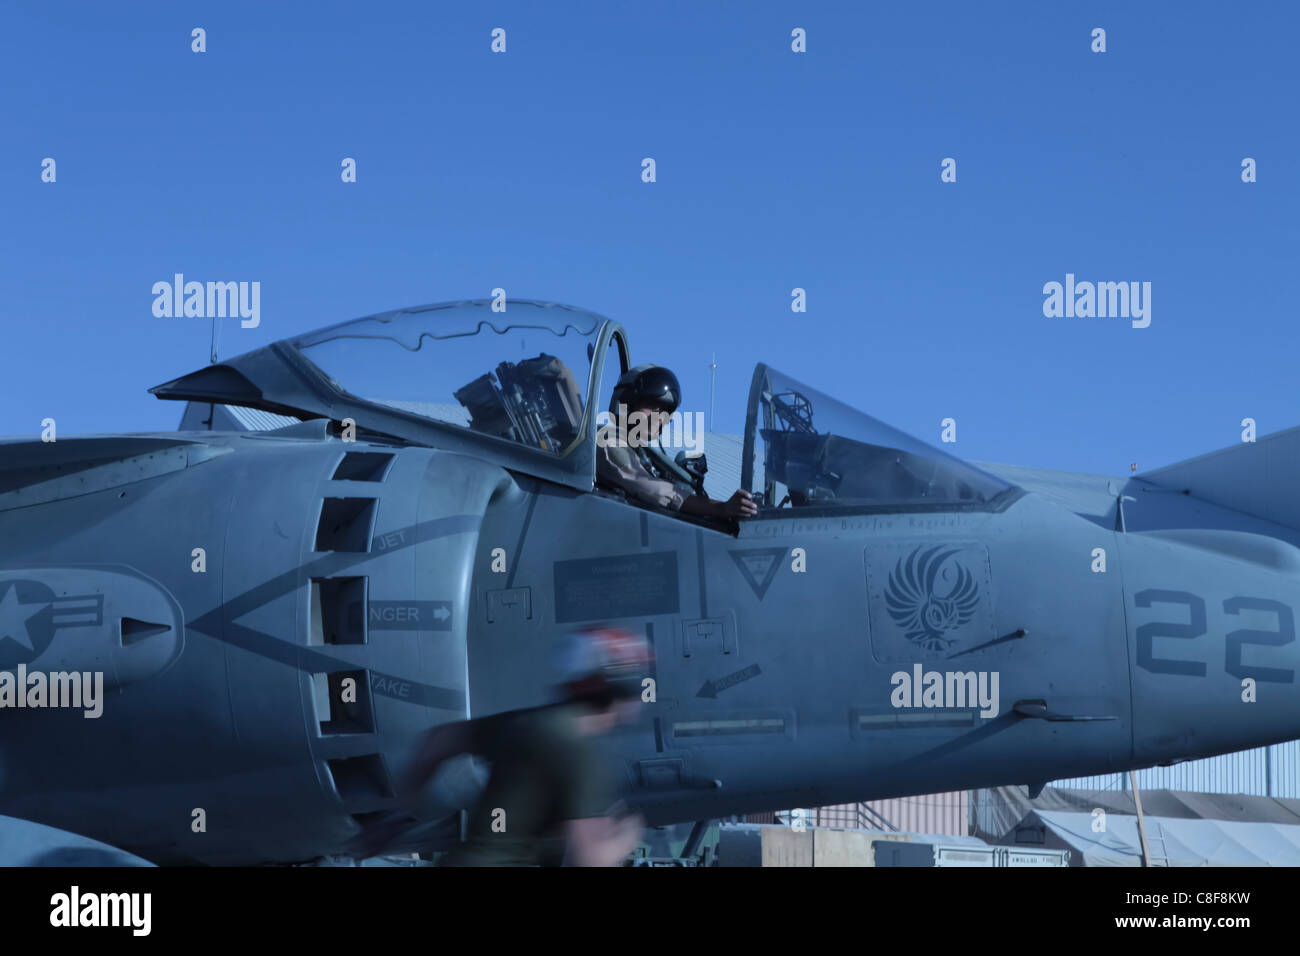 AV-8B Harrier on the flightline of Kandahar Airfield, Afghanistan Stock Photo